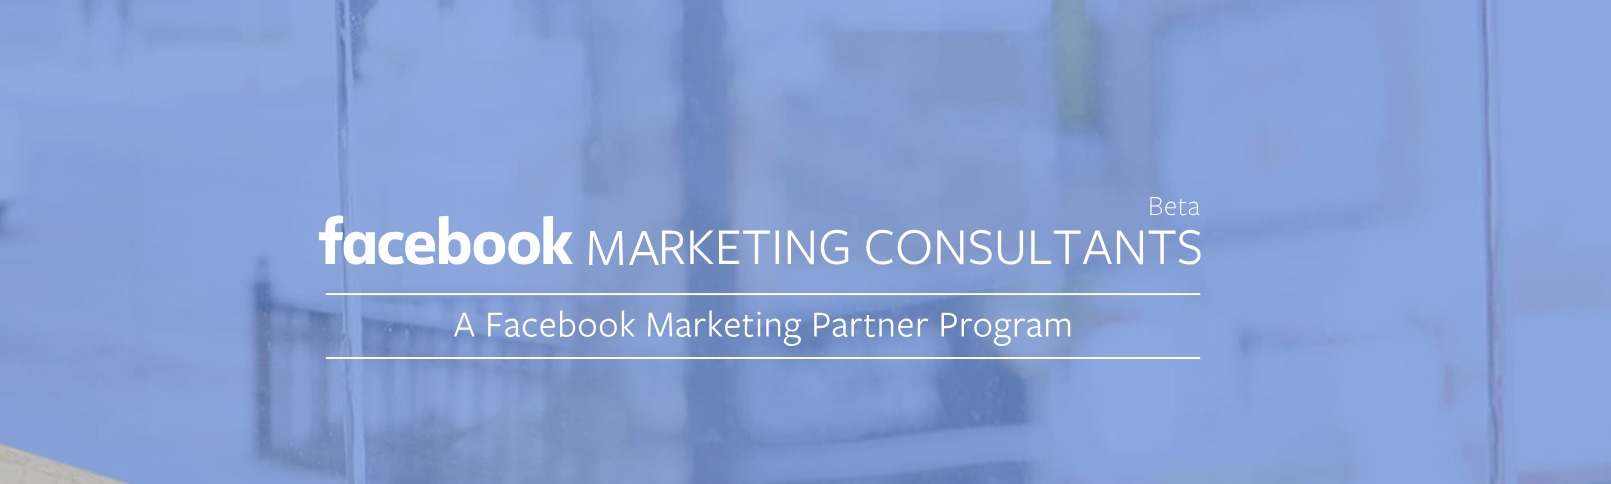 Facebook Marketing Consultant